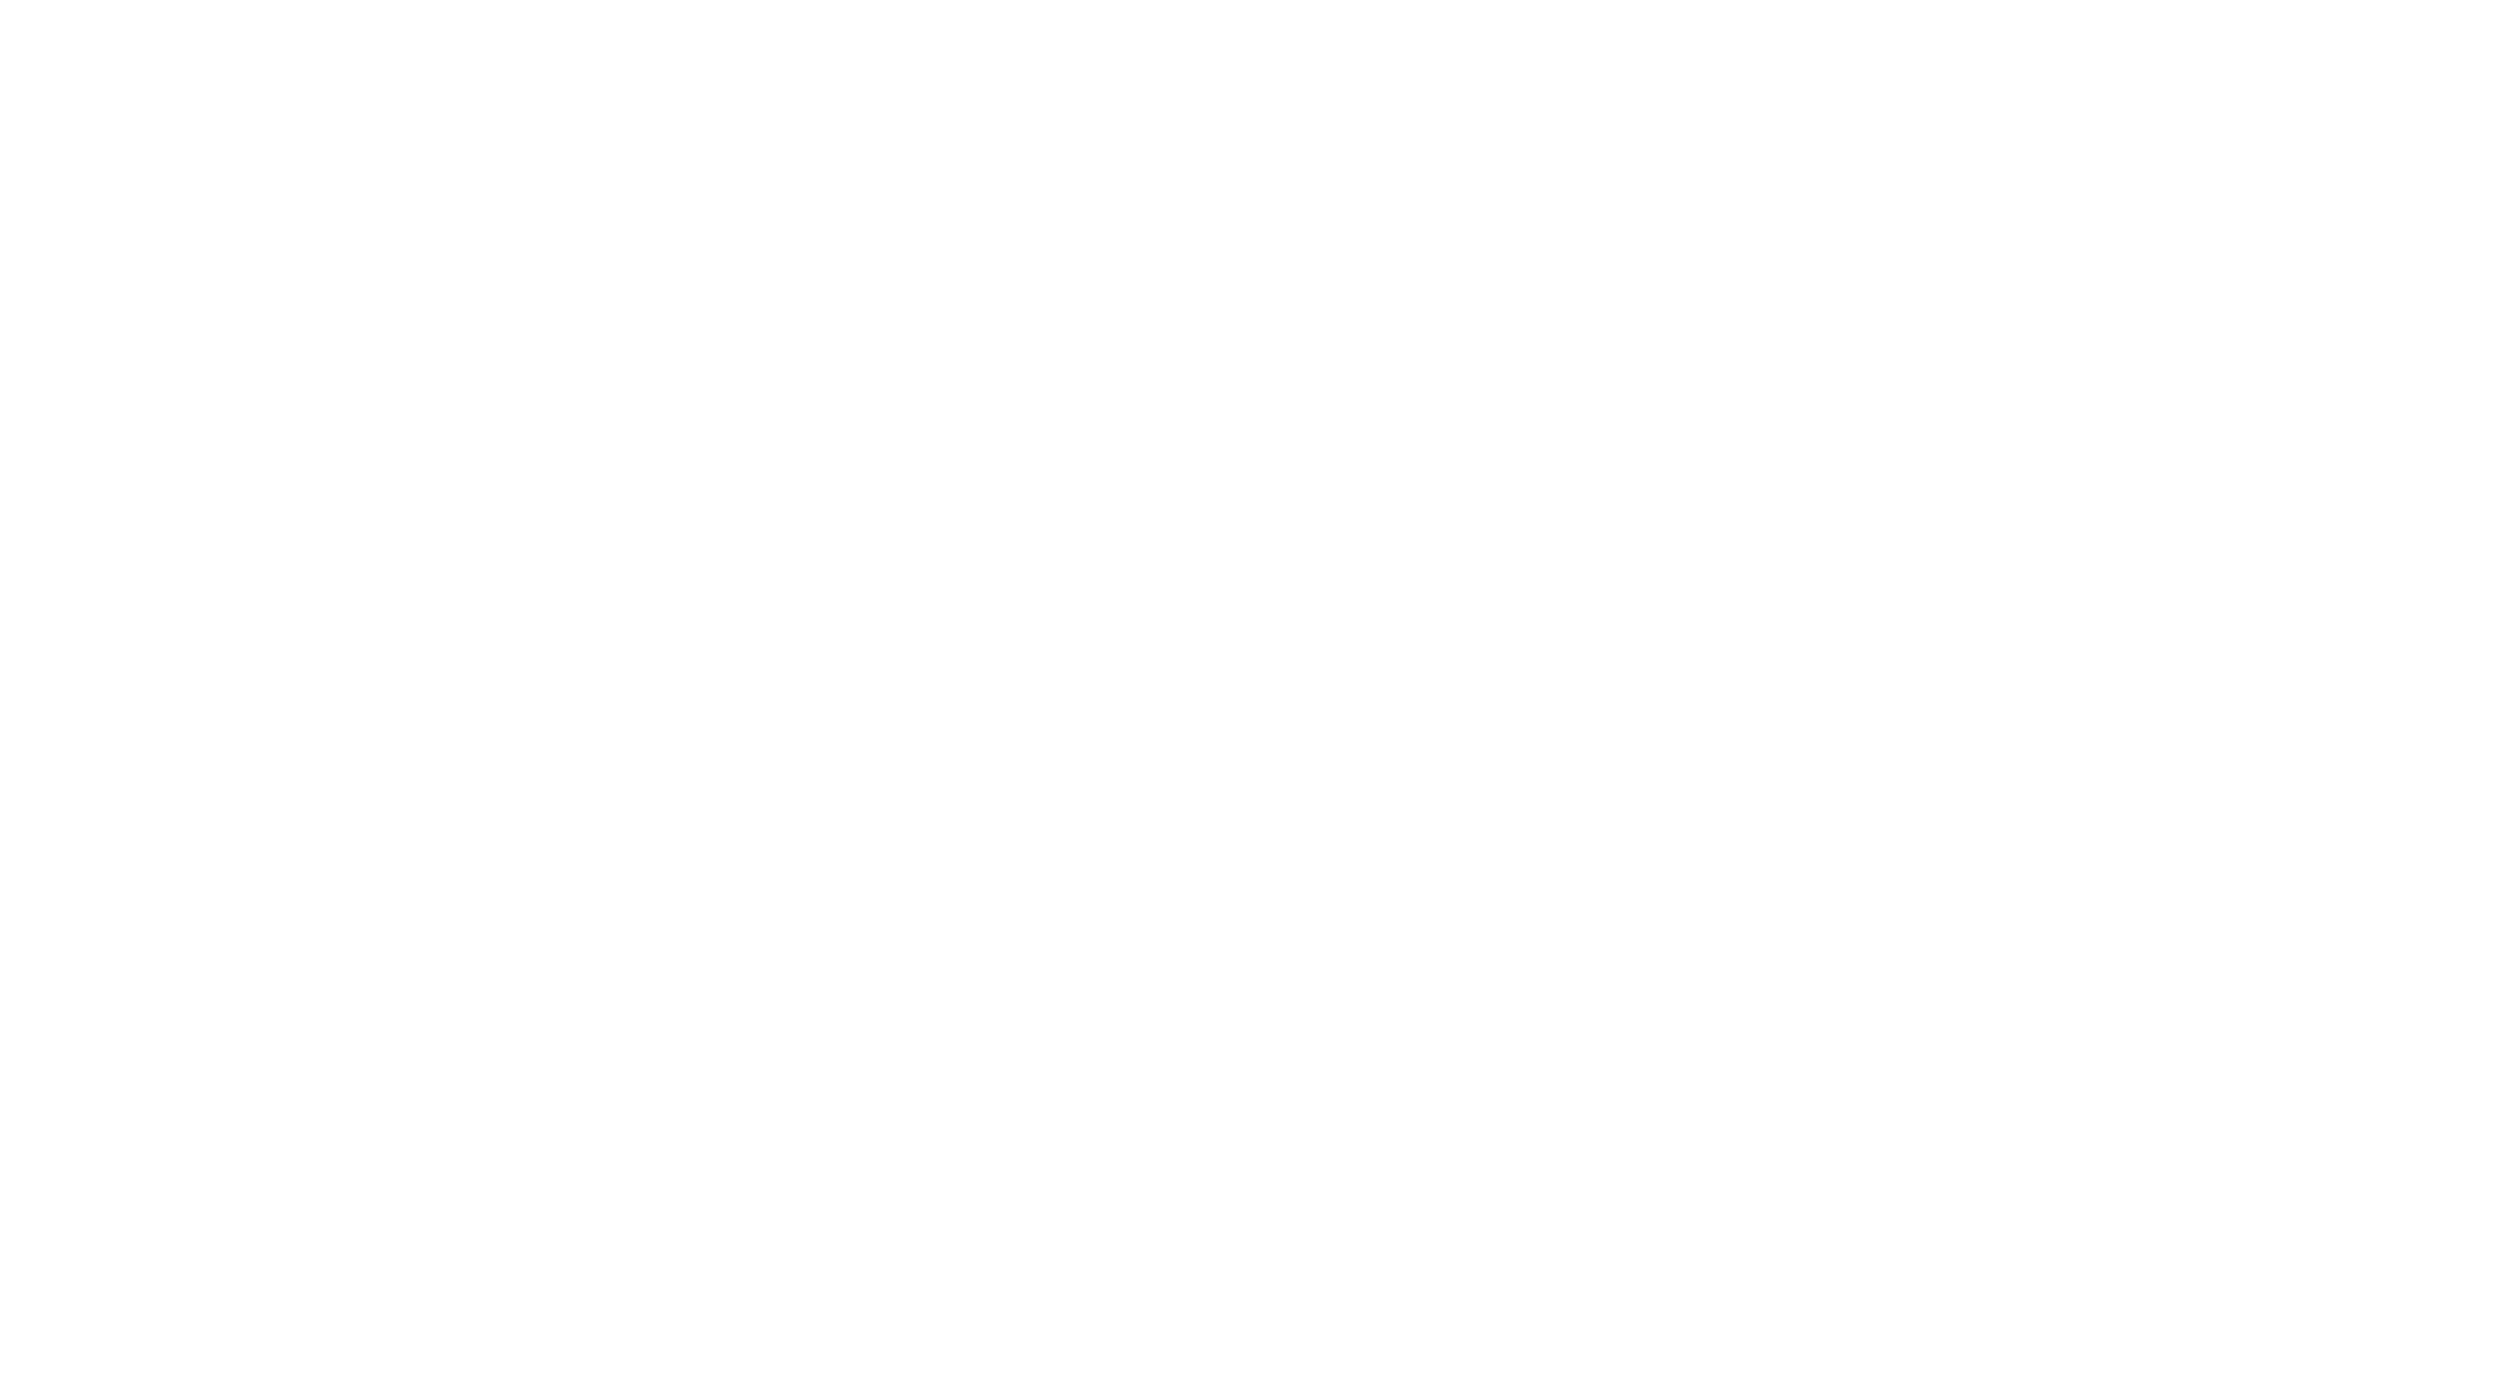 AMA at Cane Bay